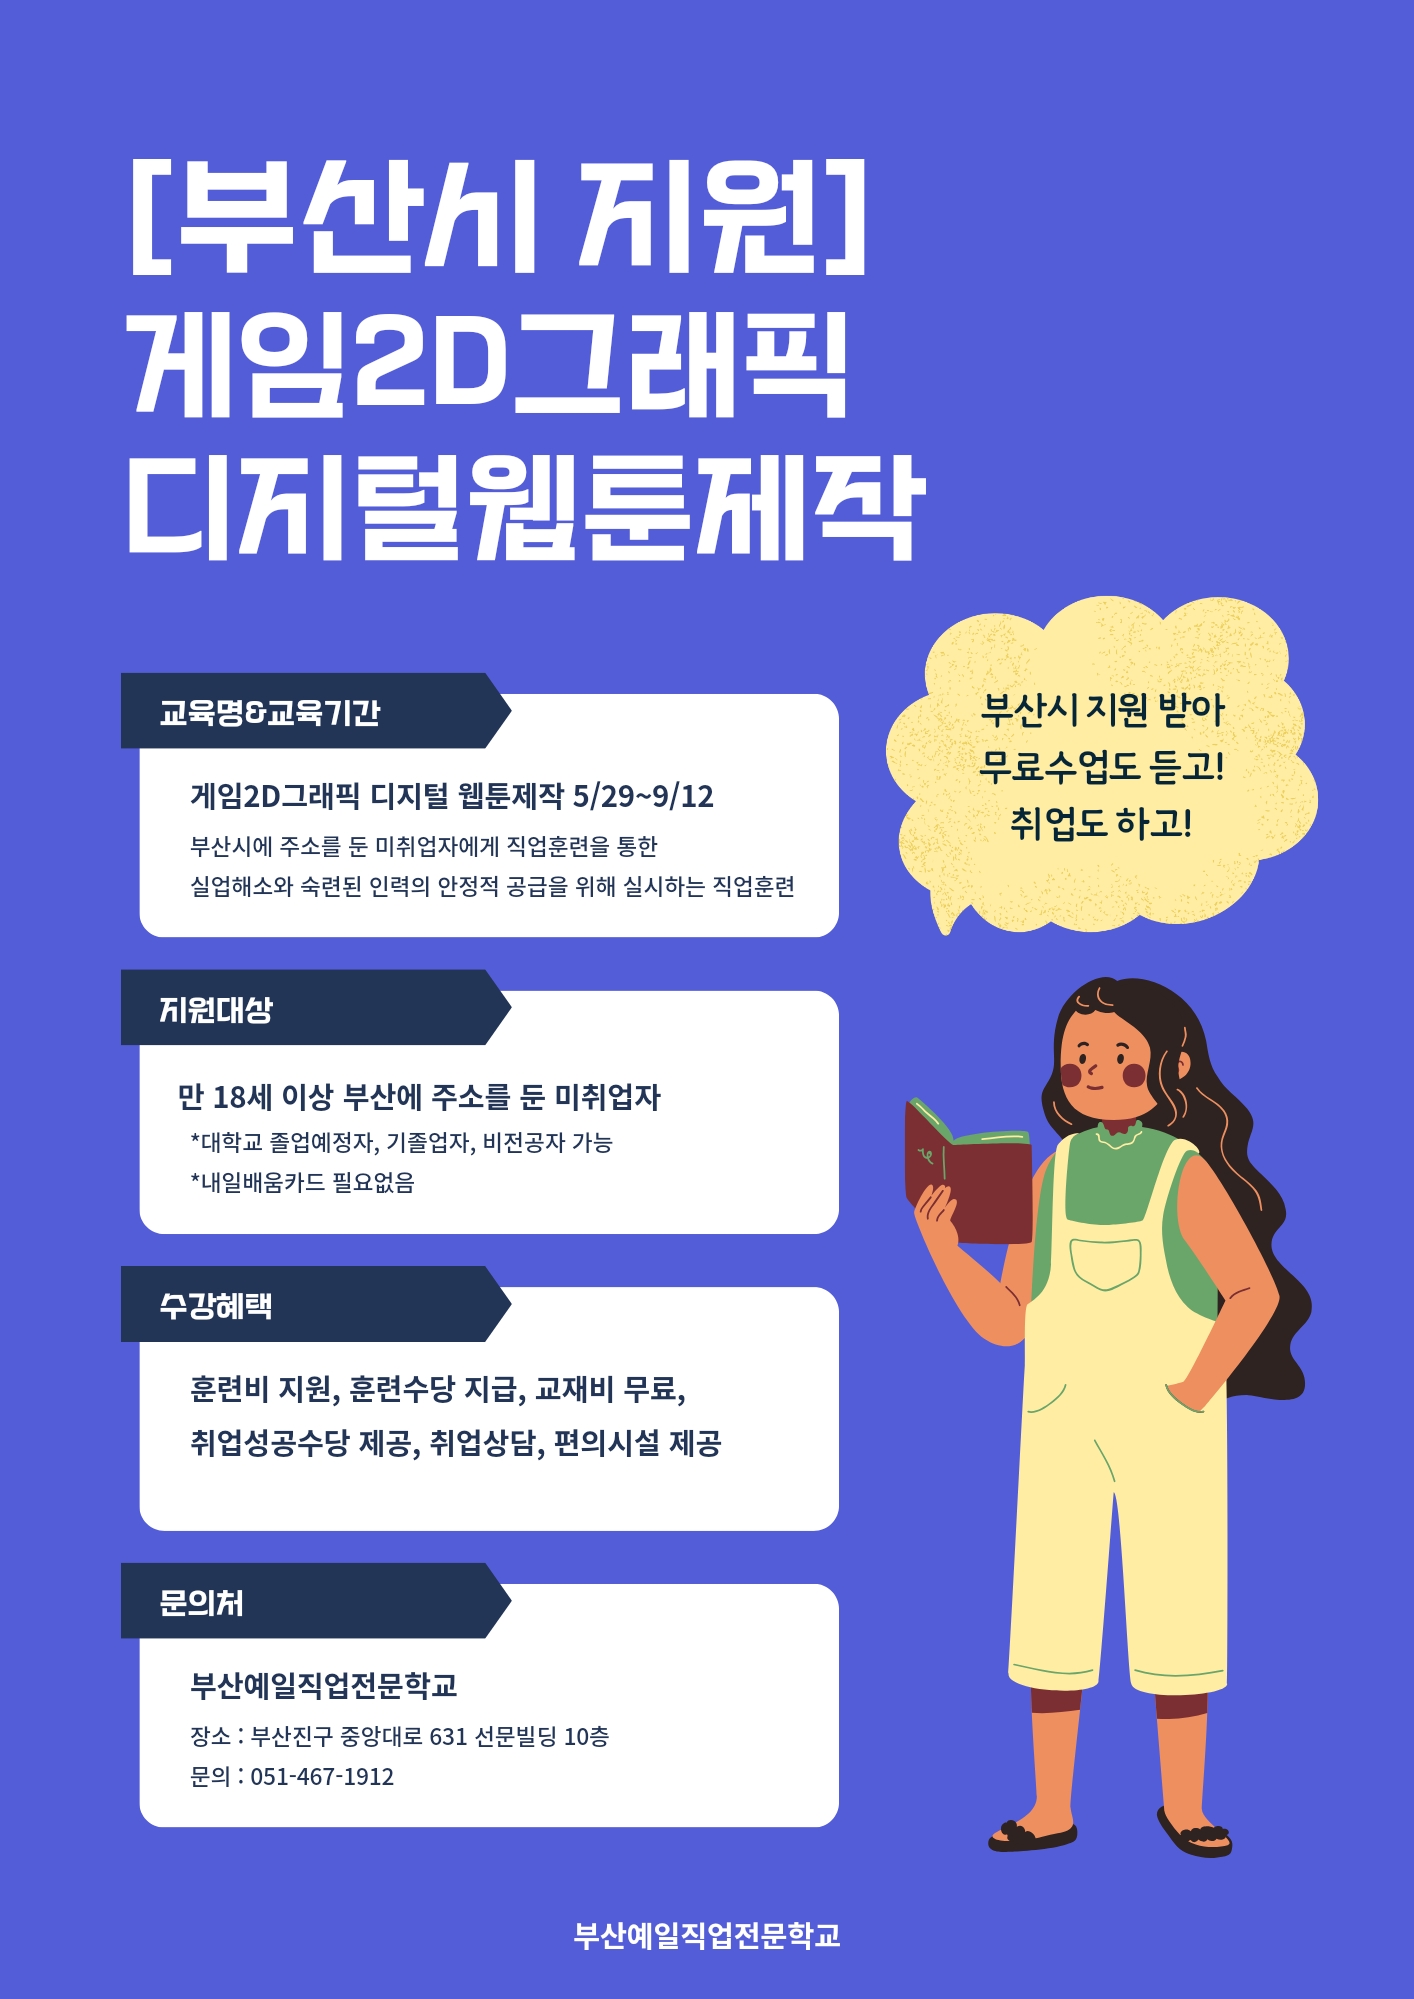 부산시지원 게임2D그래픽,디지털웹툰제작 교육생모집